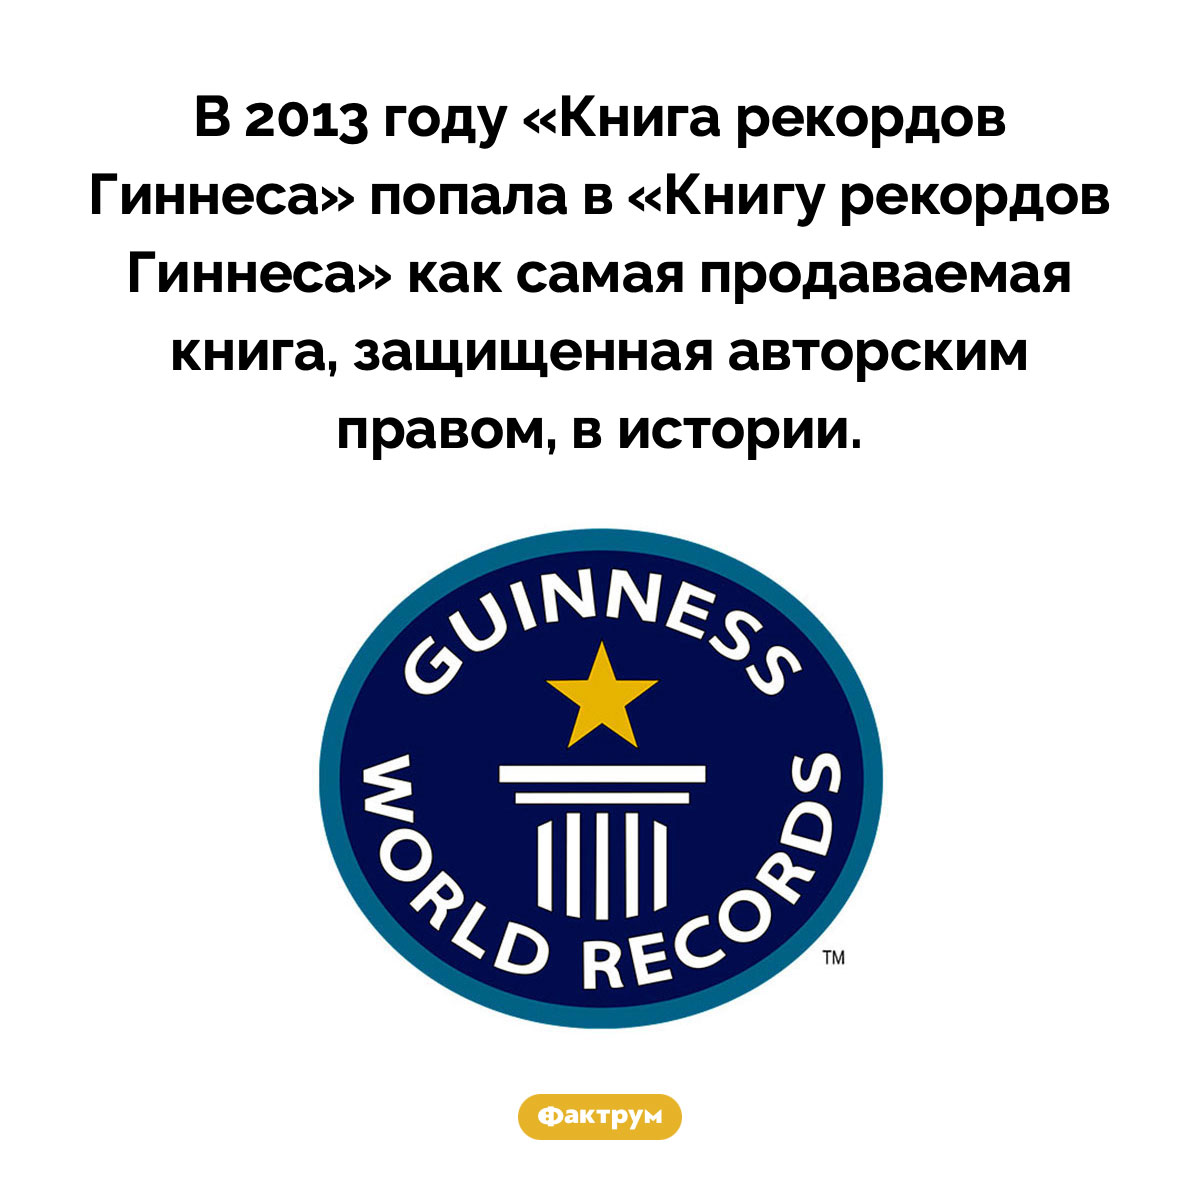 «Книга рекордов Гиннеса» попала в «Книгу рекордов Гиннеса». В 2013 году «Книга рекордов Гиннеса» попала в «Книгу рекордов Гиннеса» как самая продаваемая книга, защищенная авторским правом, в истории.